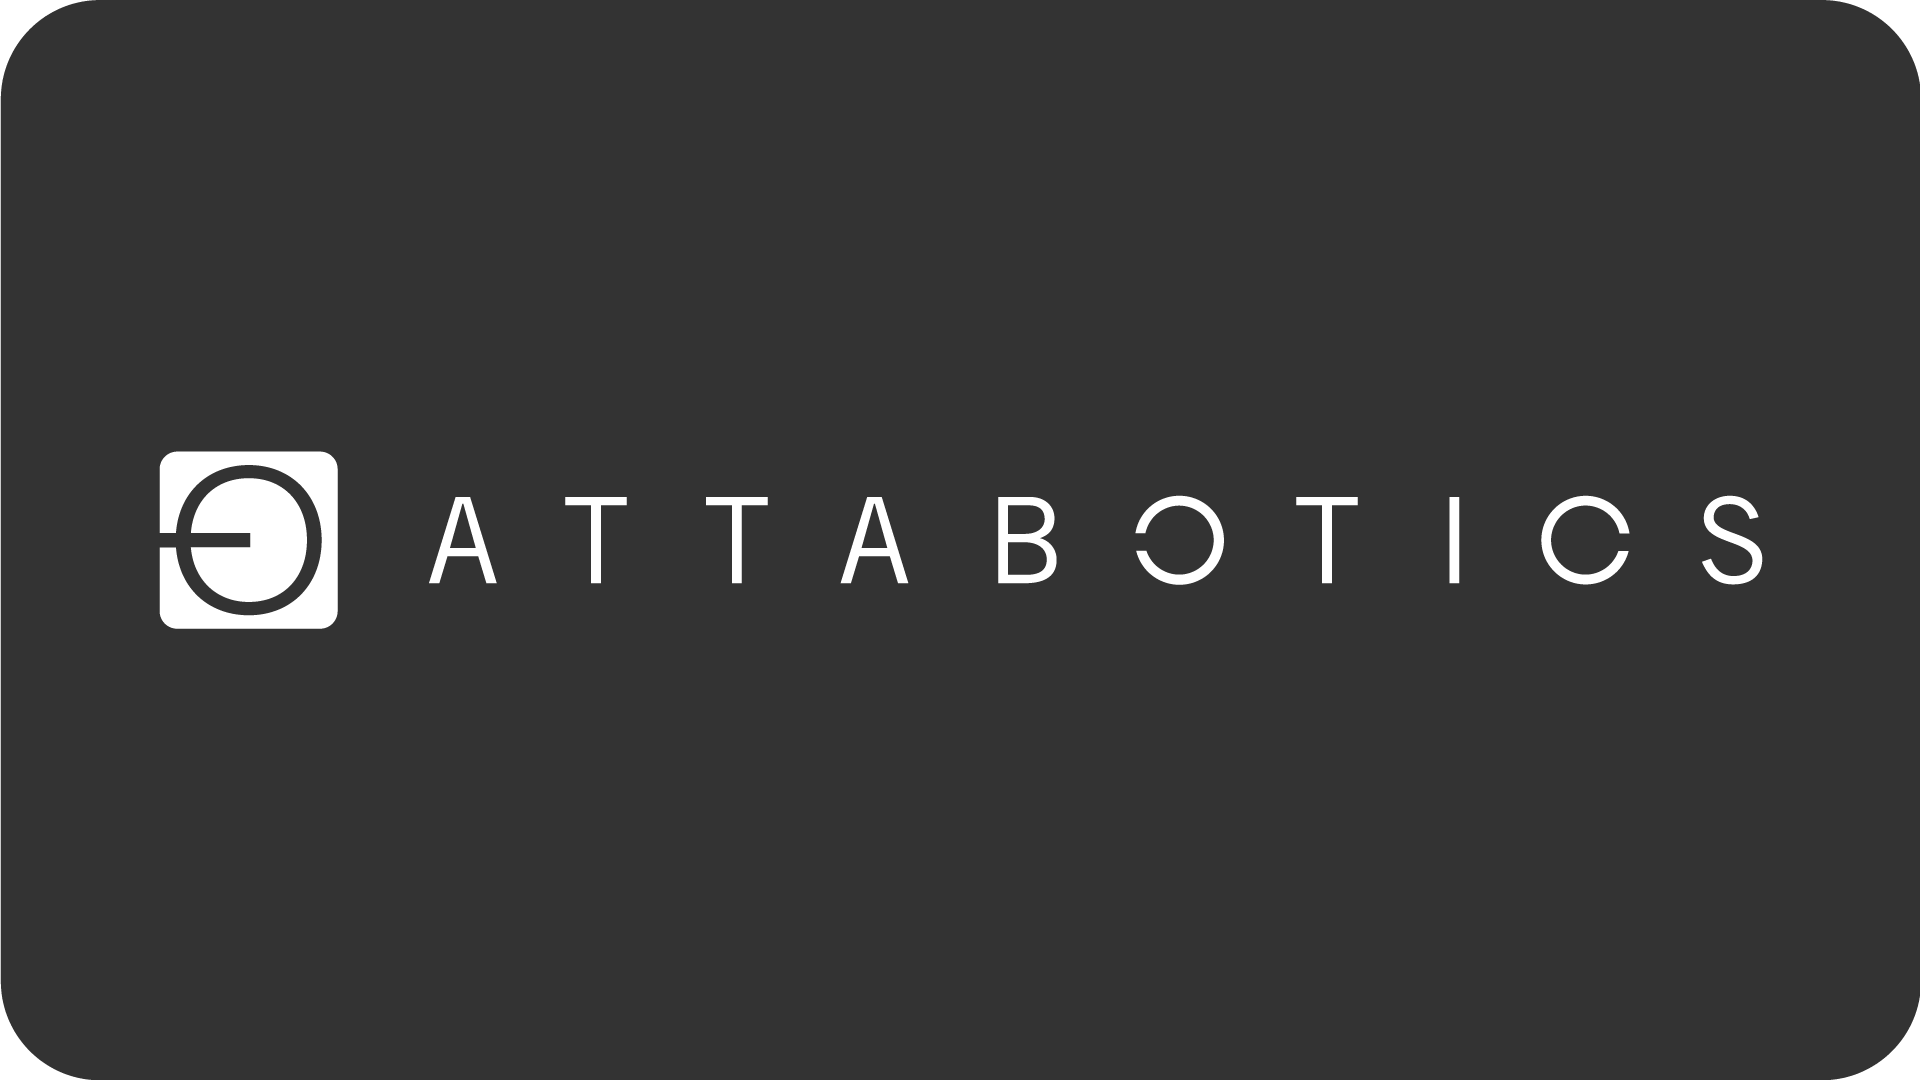 Attabotics